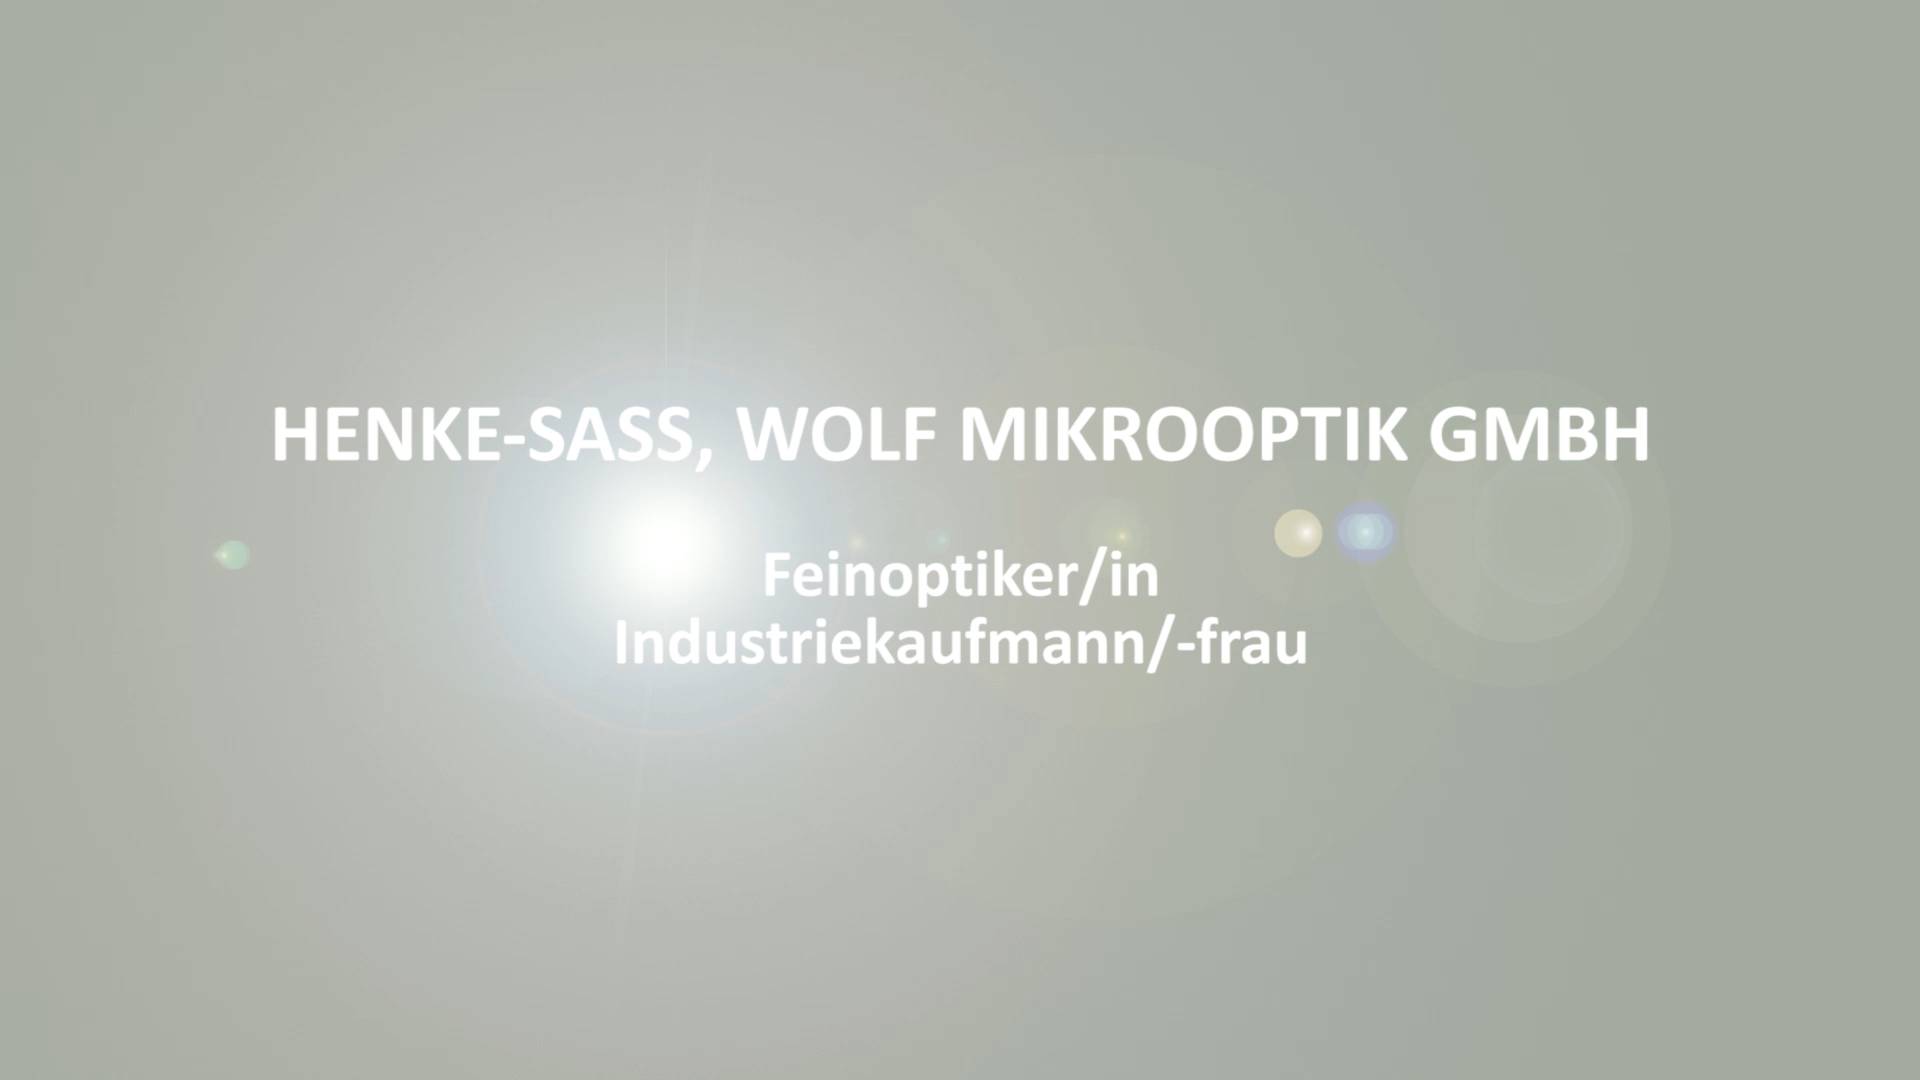 Ausbildungsfilm Henke-Sass, Wolf Mikrooptik GmbH